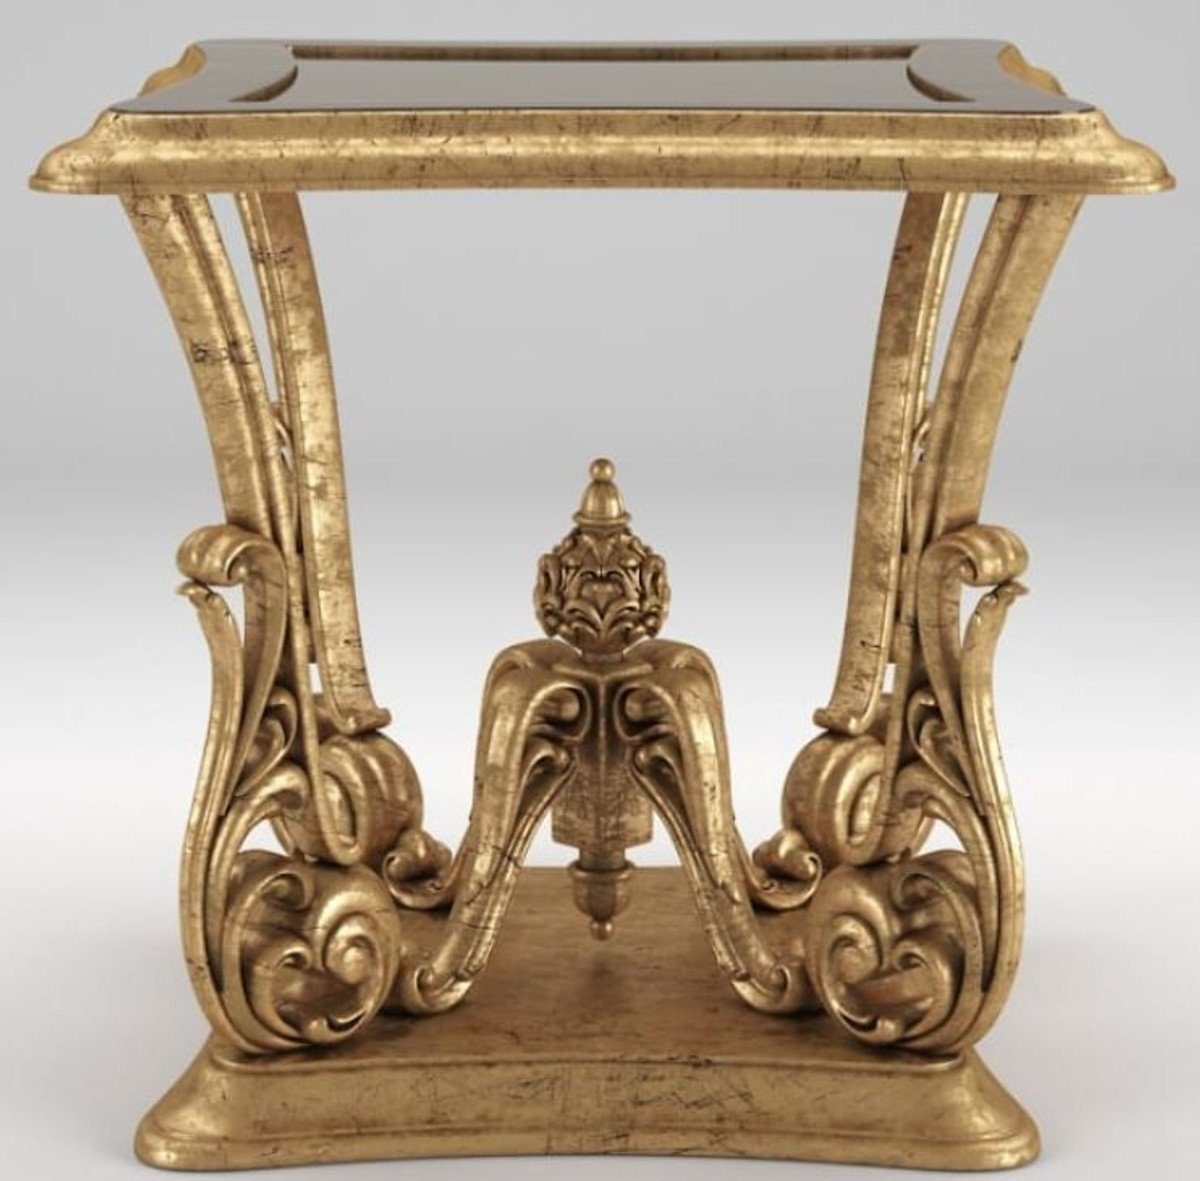 x 70 Gold cm Beistelltisch Tisch Antik Barock Luxus - im 70 x 70 Prunkvoller Padrino Beistelltisch Casa Barock Barockstil H. Möbel -